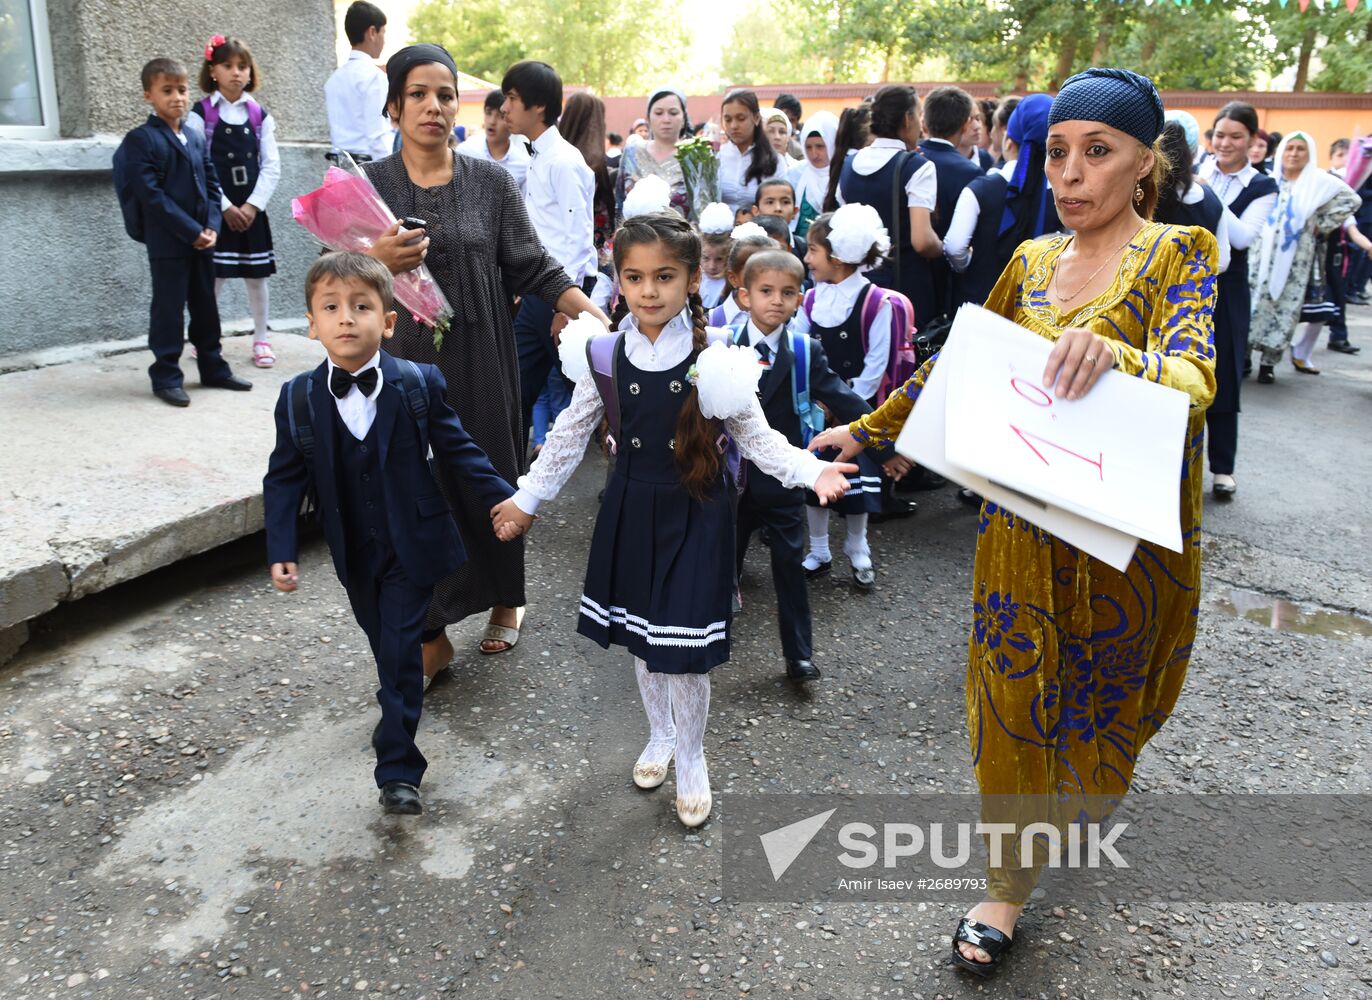 September 1 in Dushanbe